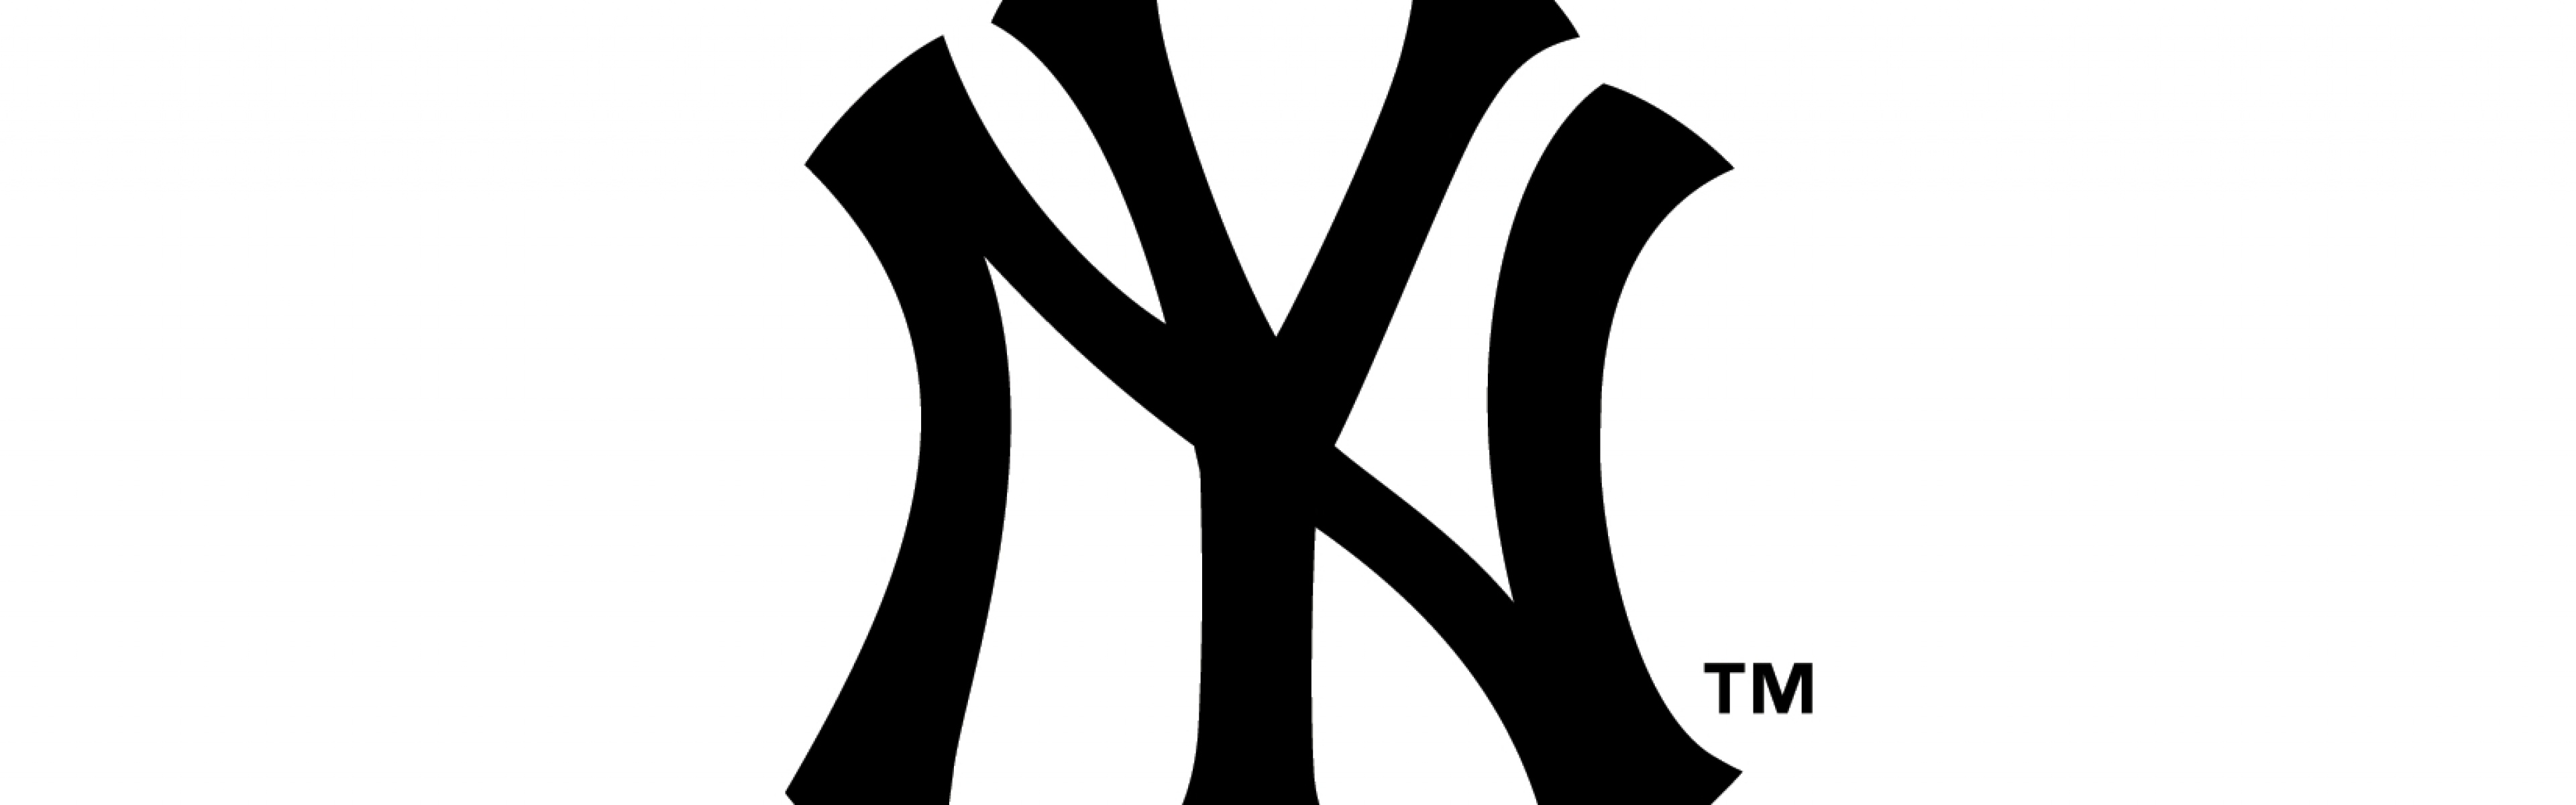 Wallpaper New York Yankees Logo Famous Brand Dual